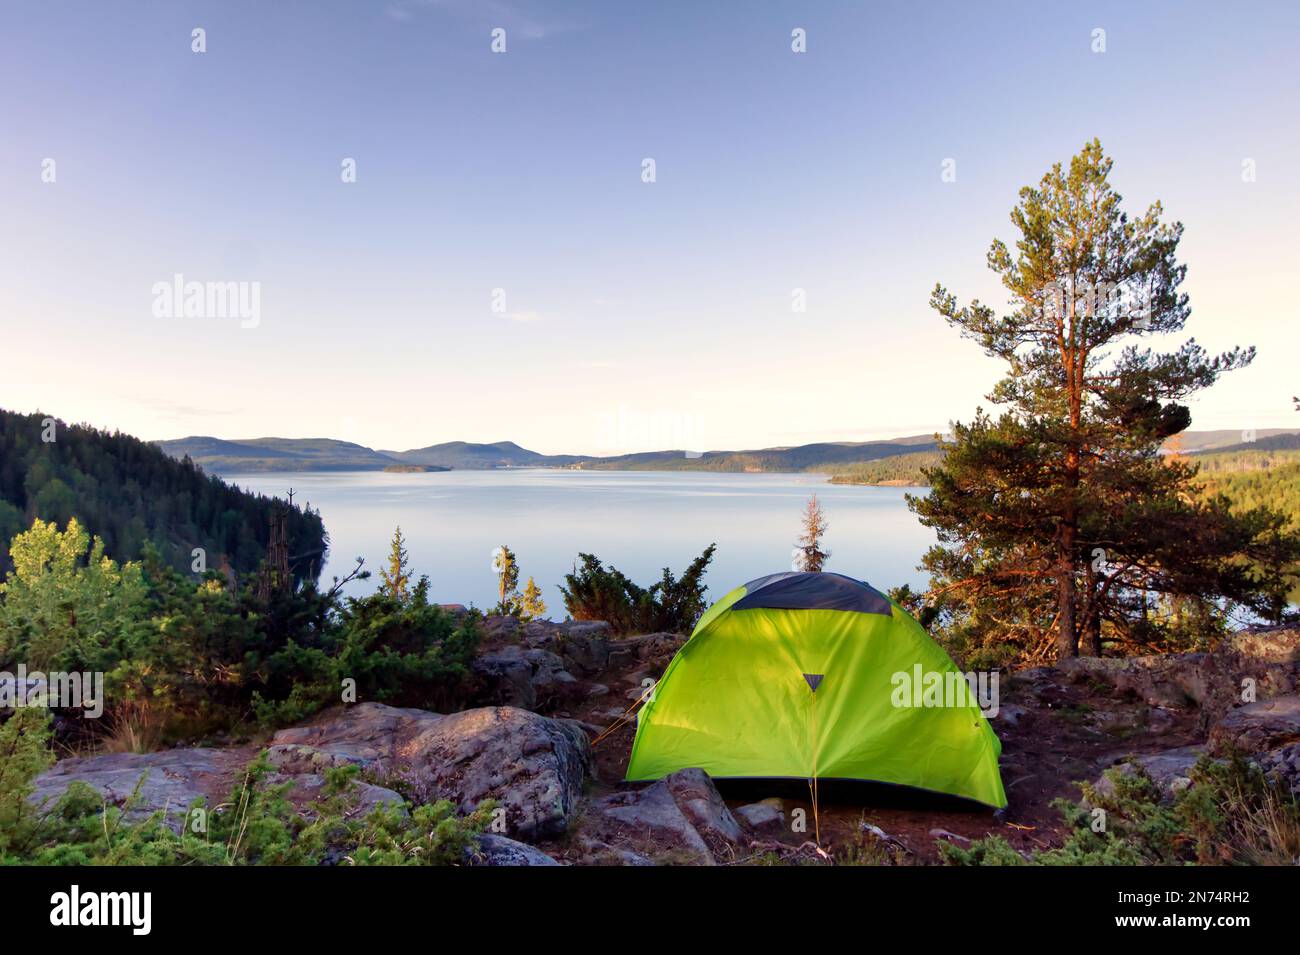 Zelt in der schwedischen Wildnis mit malerischem Blick auf den See, die Berge und den Wald Stockfoto